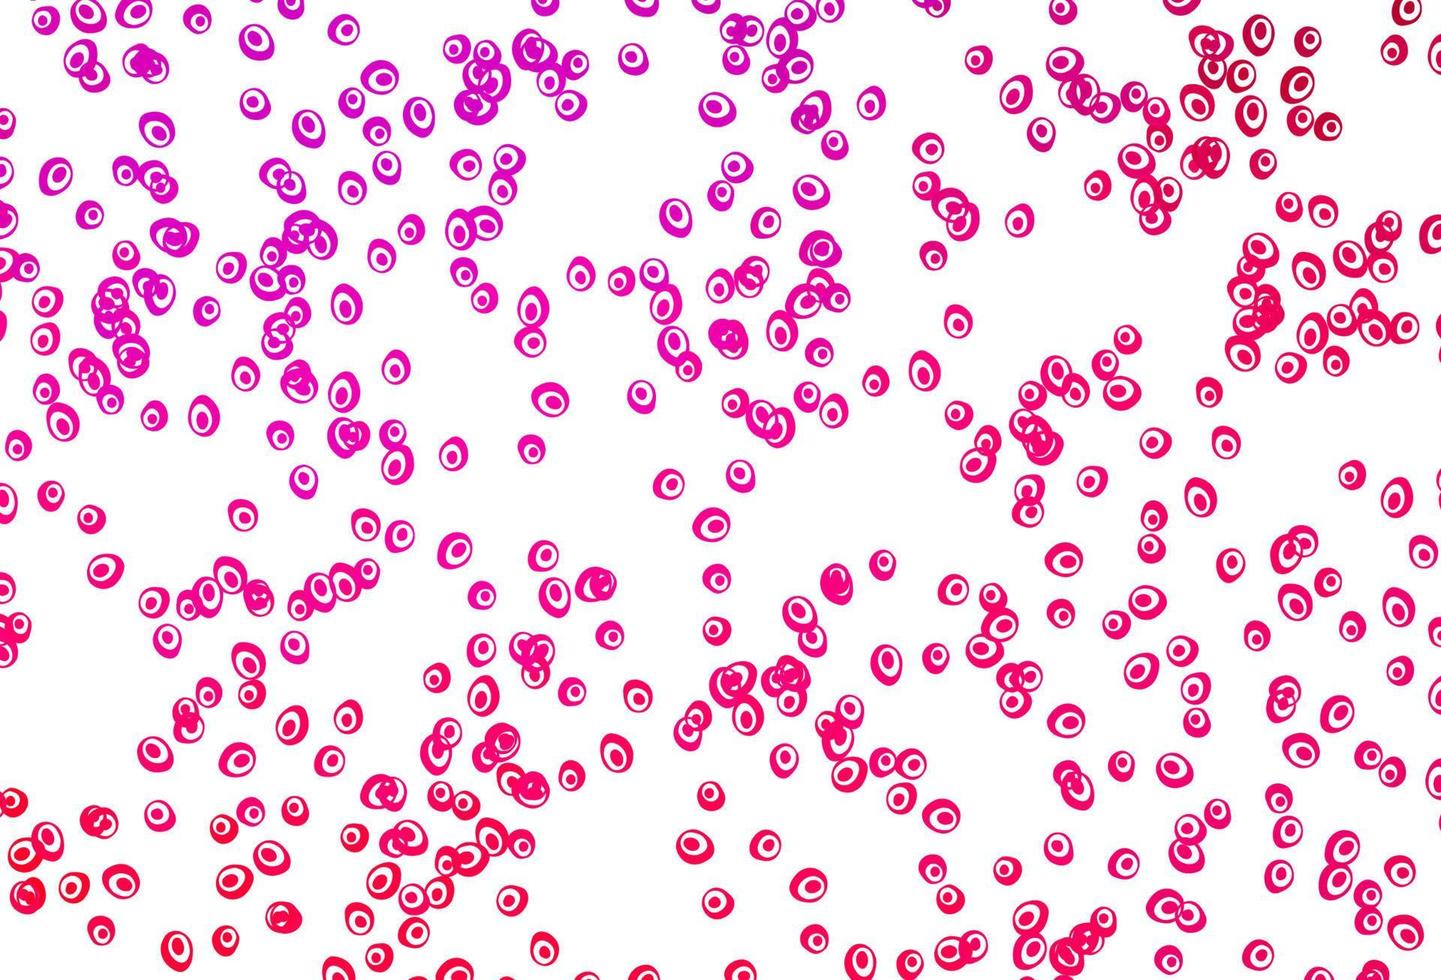 modelo de vetor roxo, rosa claro com círculos.